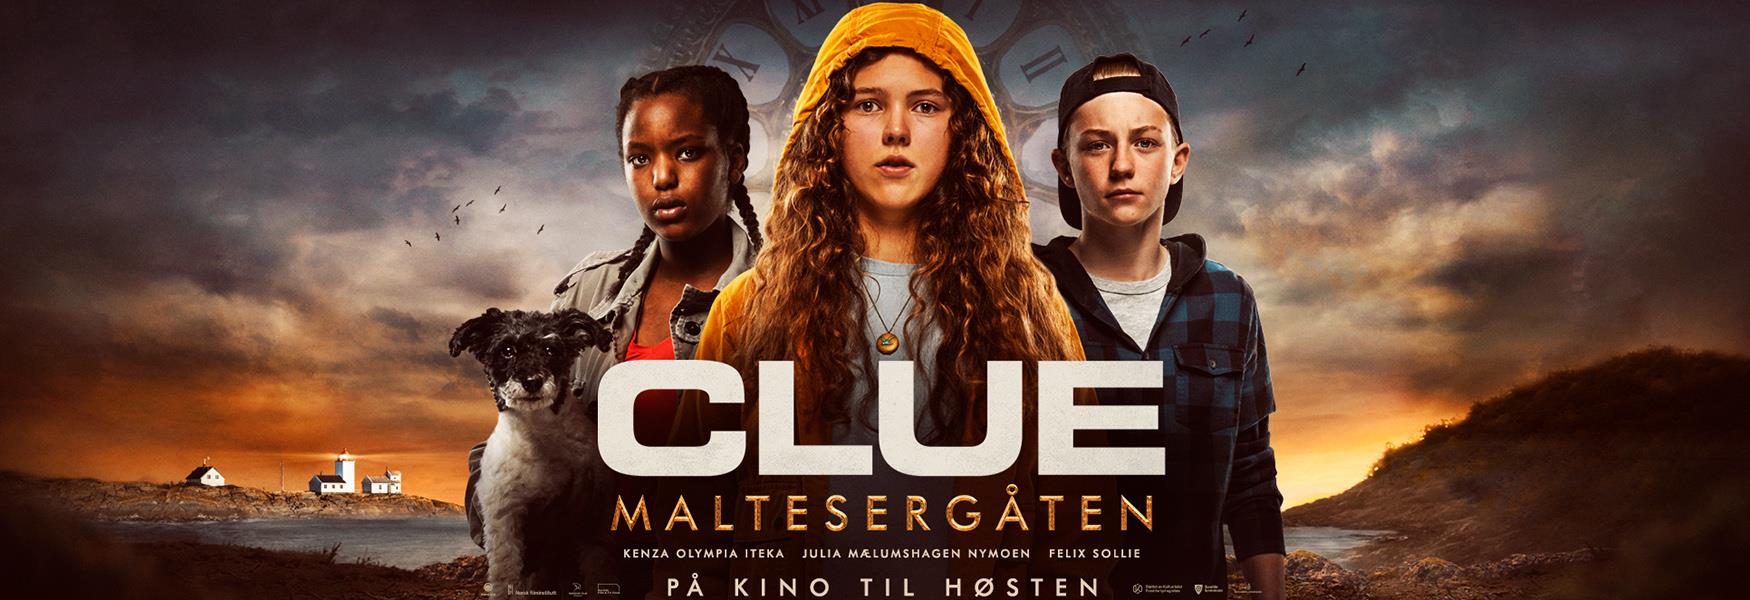 plakaten til filmen Clue Maltesergåten